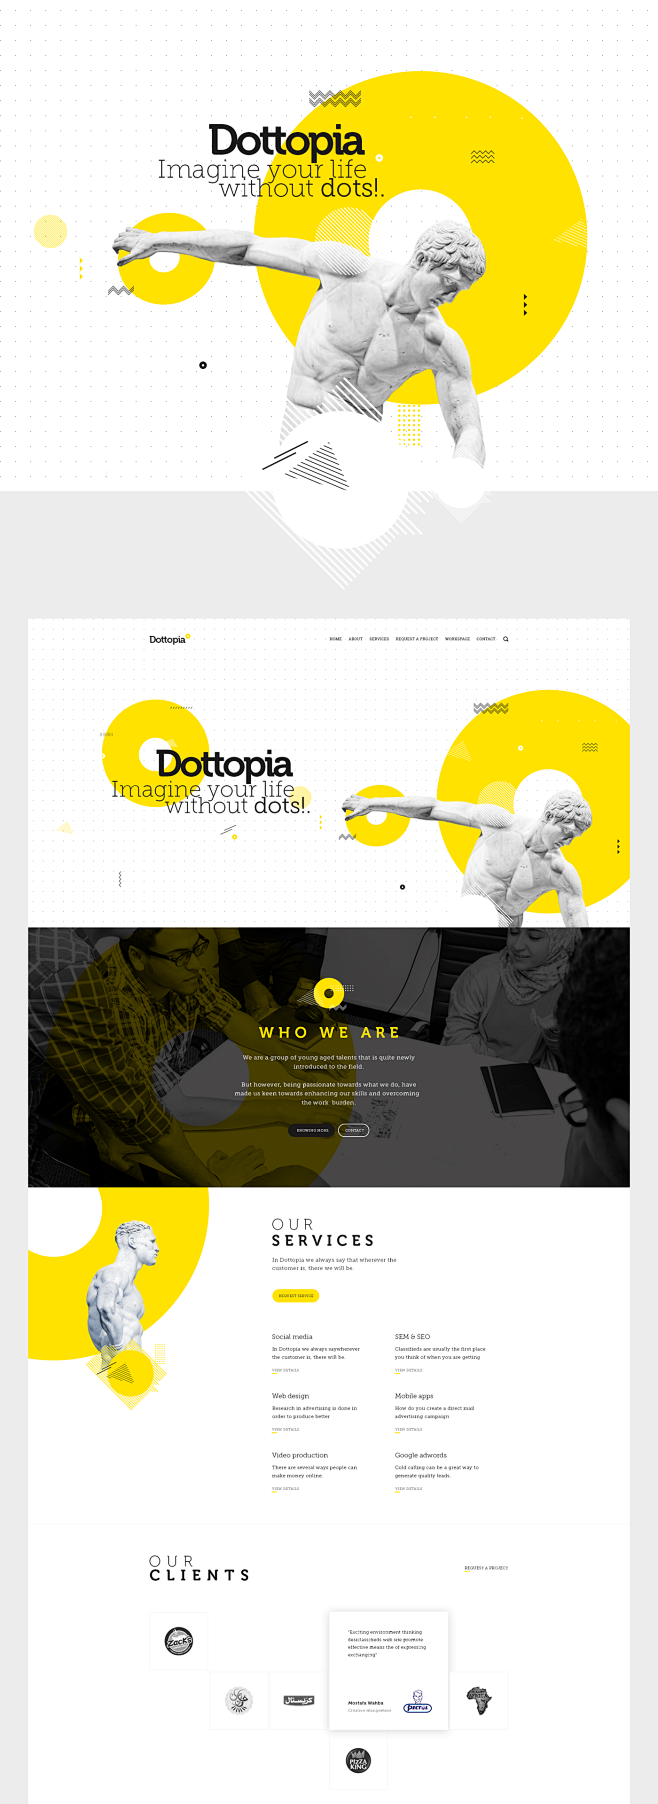 Dottopia web design ...